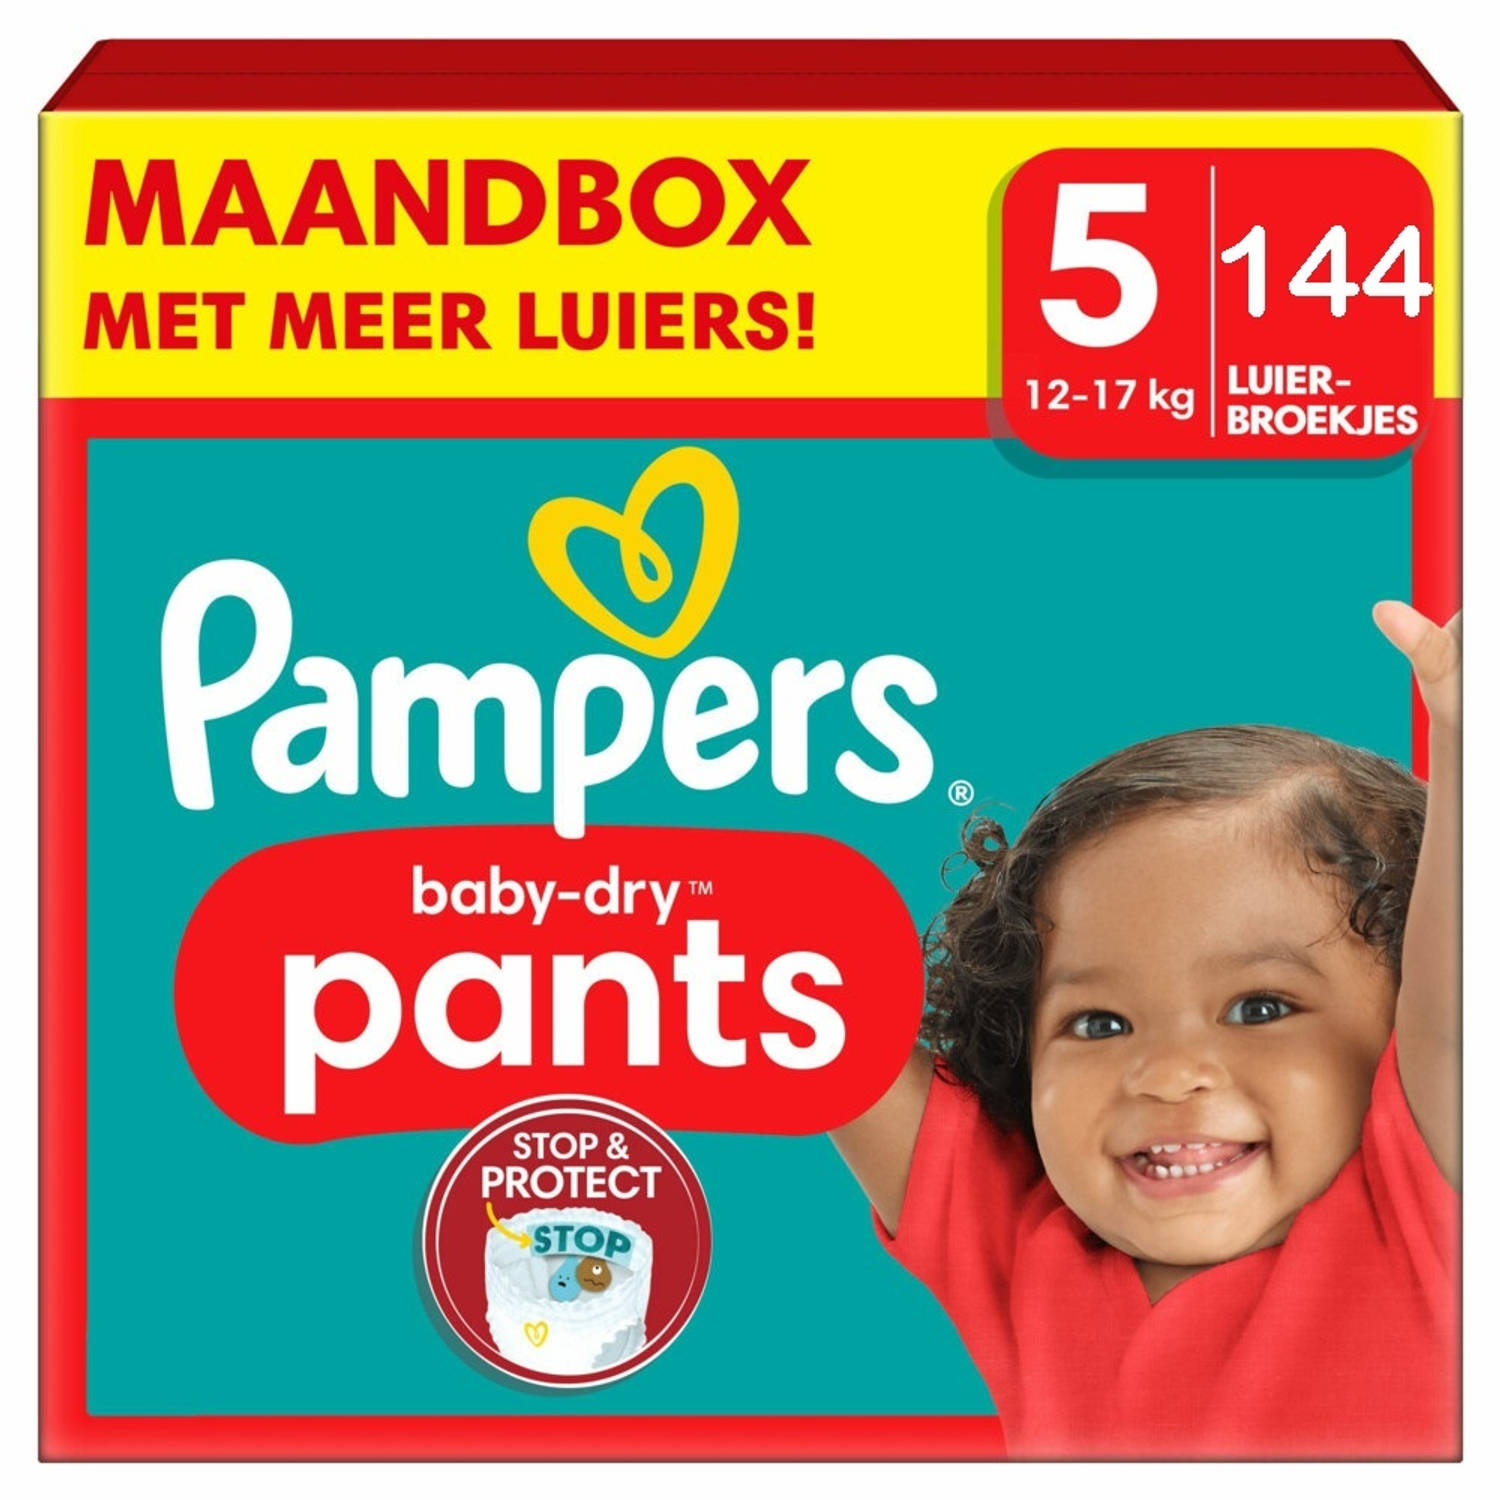 Pampers Baby Dry Pants Maat 5 144 Luierbroekjes Maandbox Xl